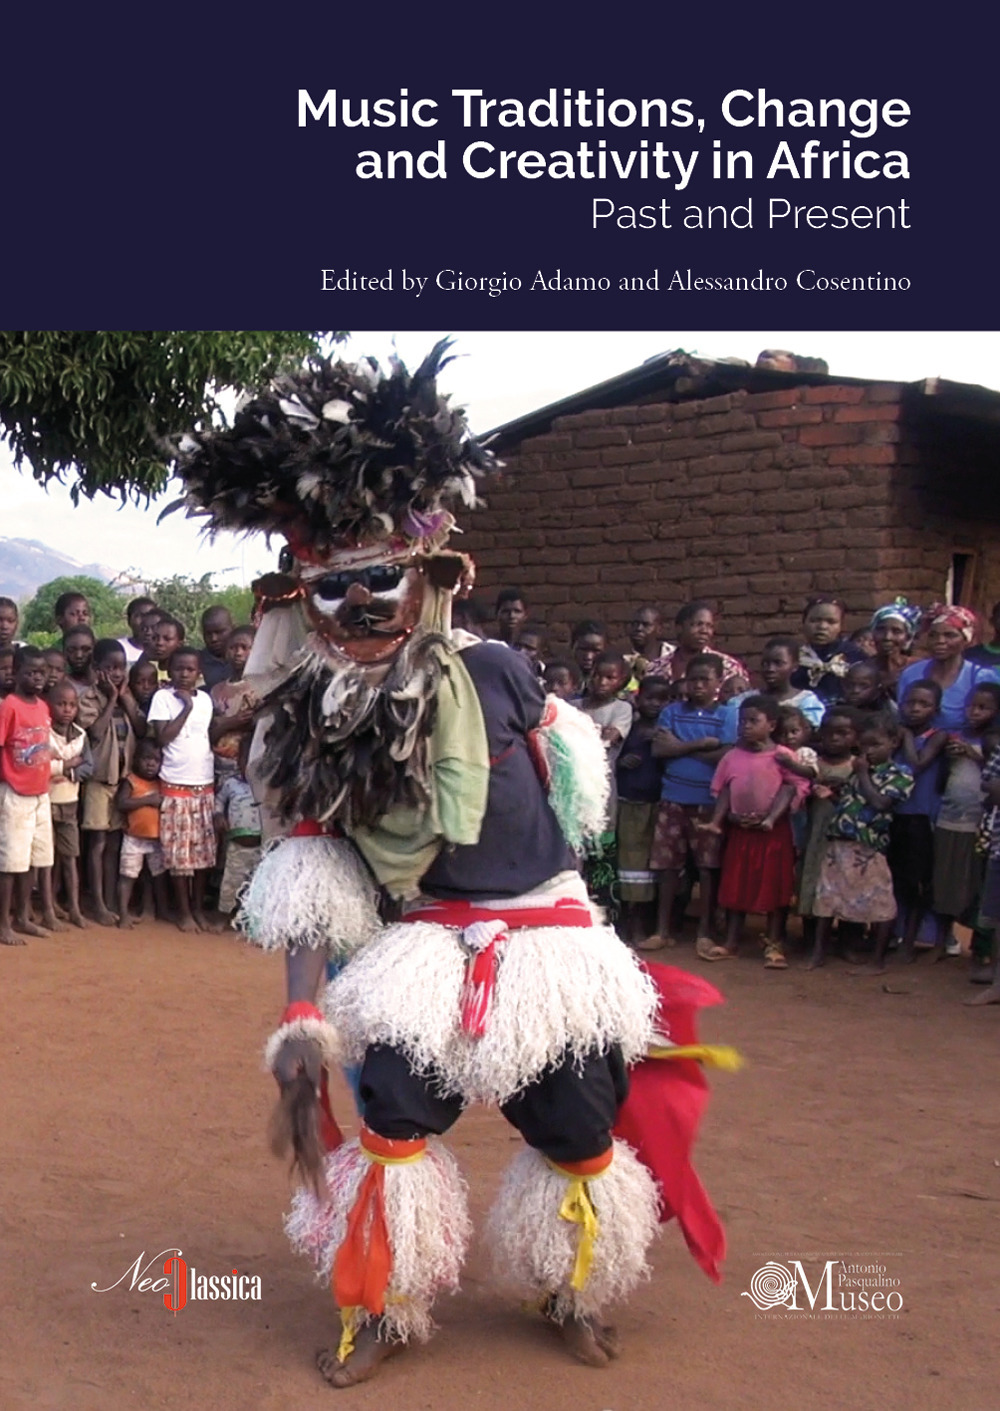 Libri Music Traditions, Change And Creativity In Africa. Past And Present NUOVO SIGILLATO, EDIZIONE DEL 11/07/2019 SUBITO DISPONIBILE